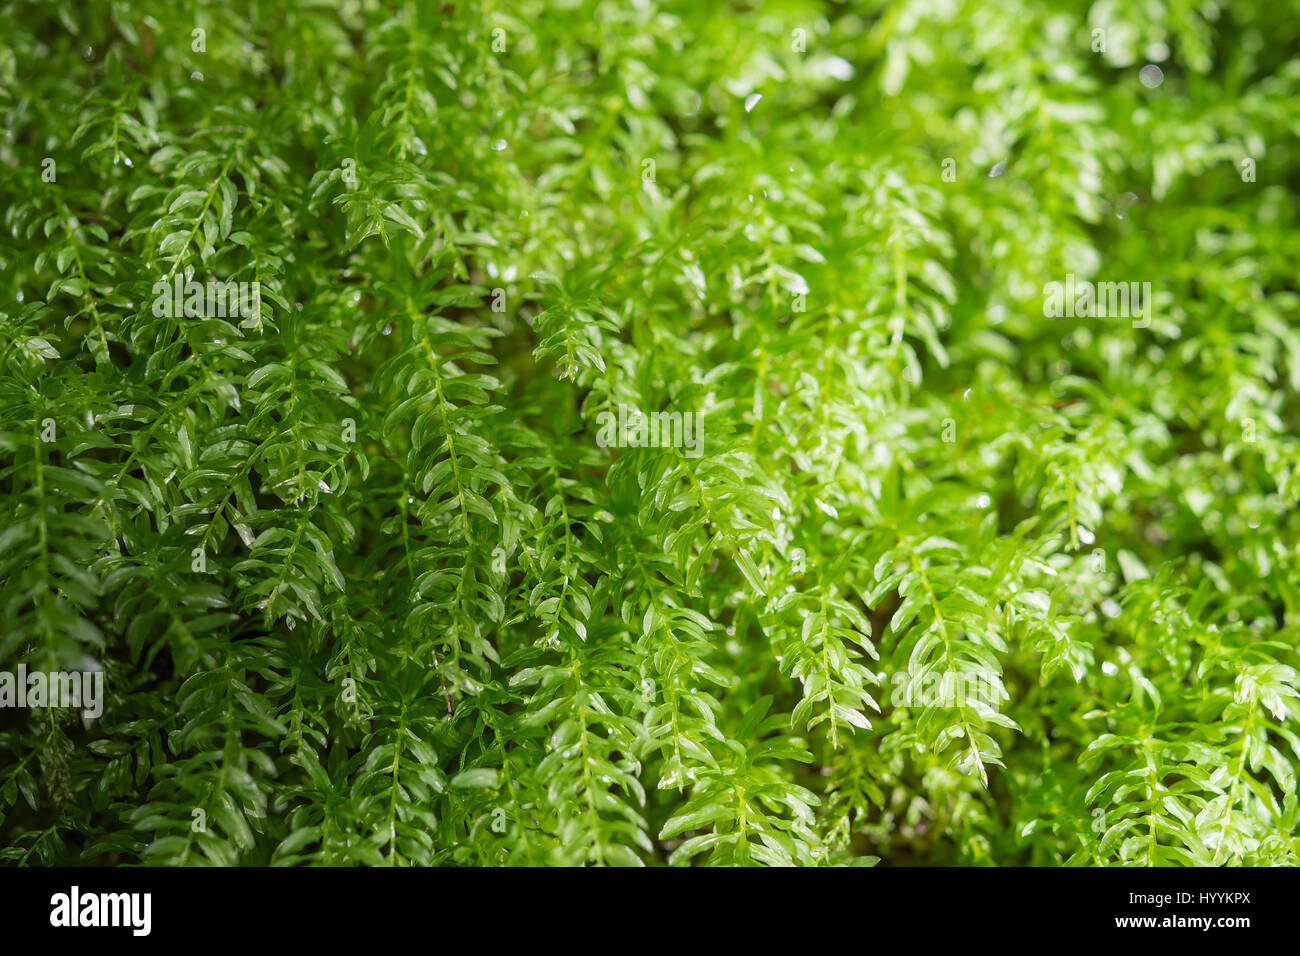 Blumenkarte mit frischen grünen Laub im Sonnenlicht Wald Stockfoto